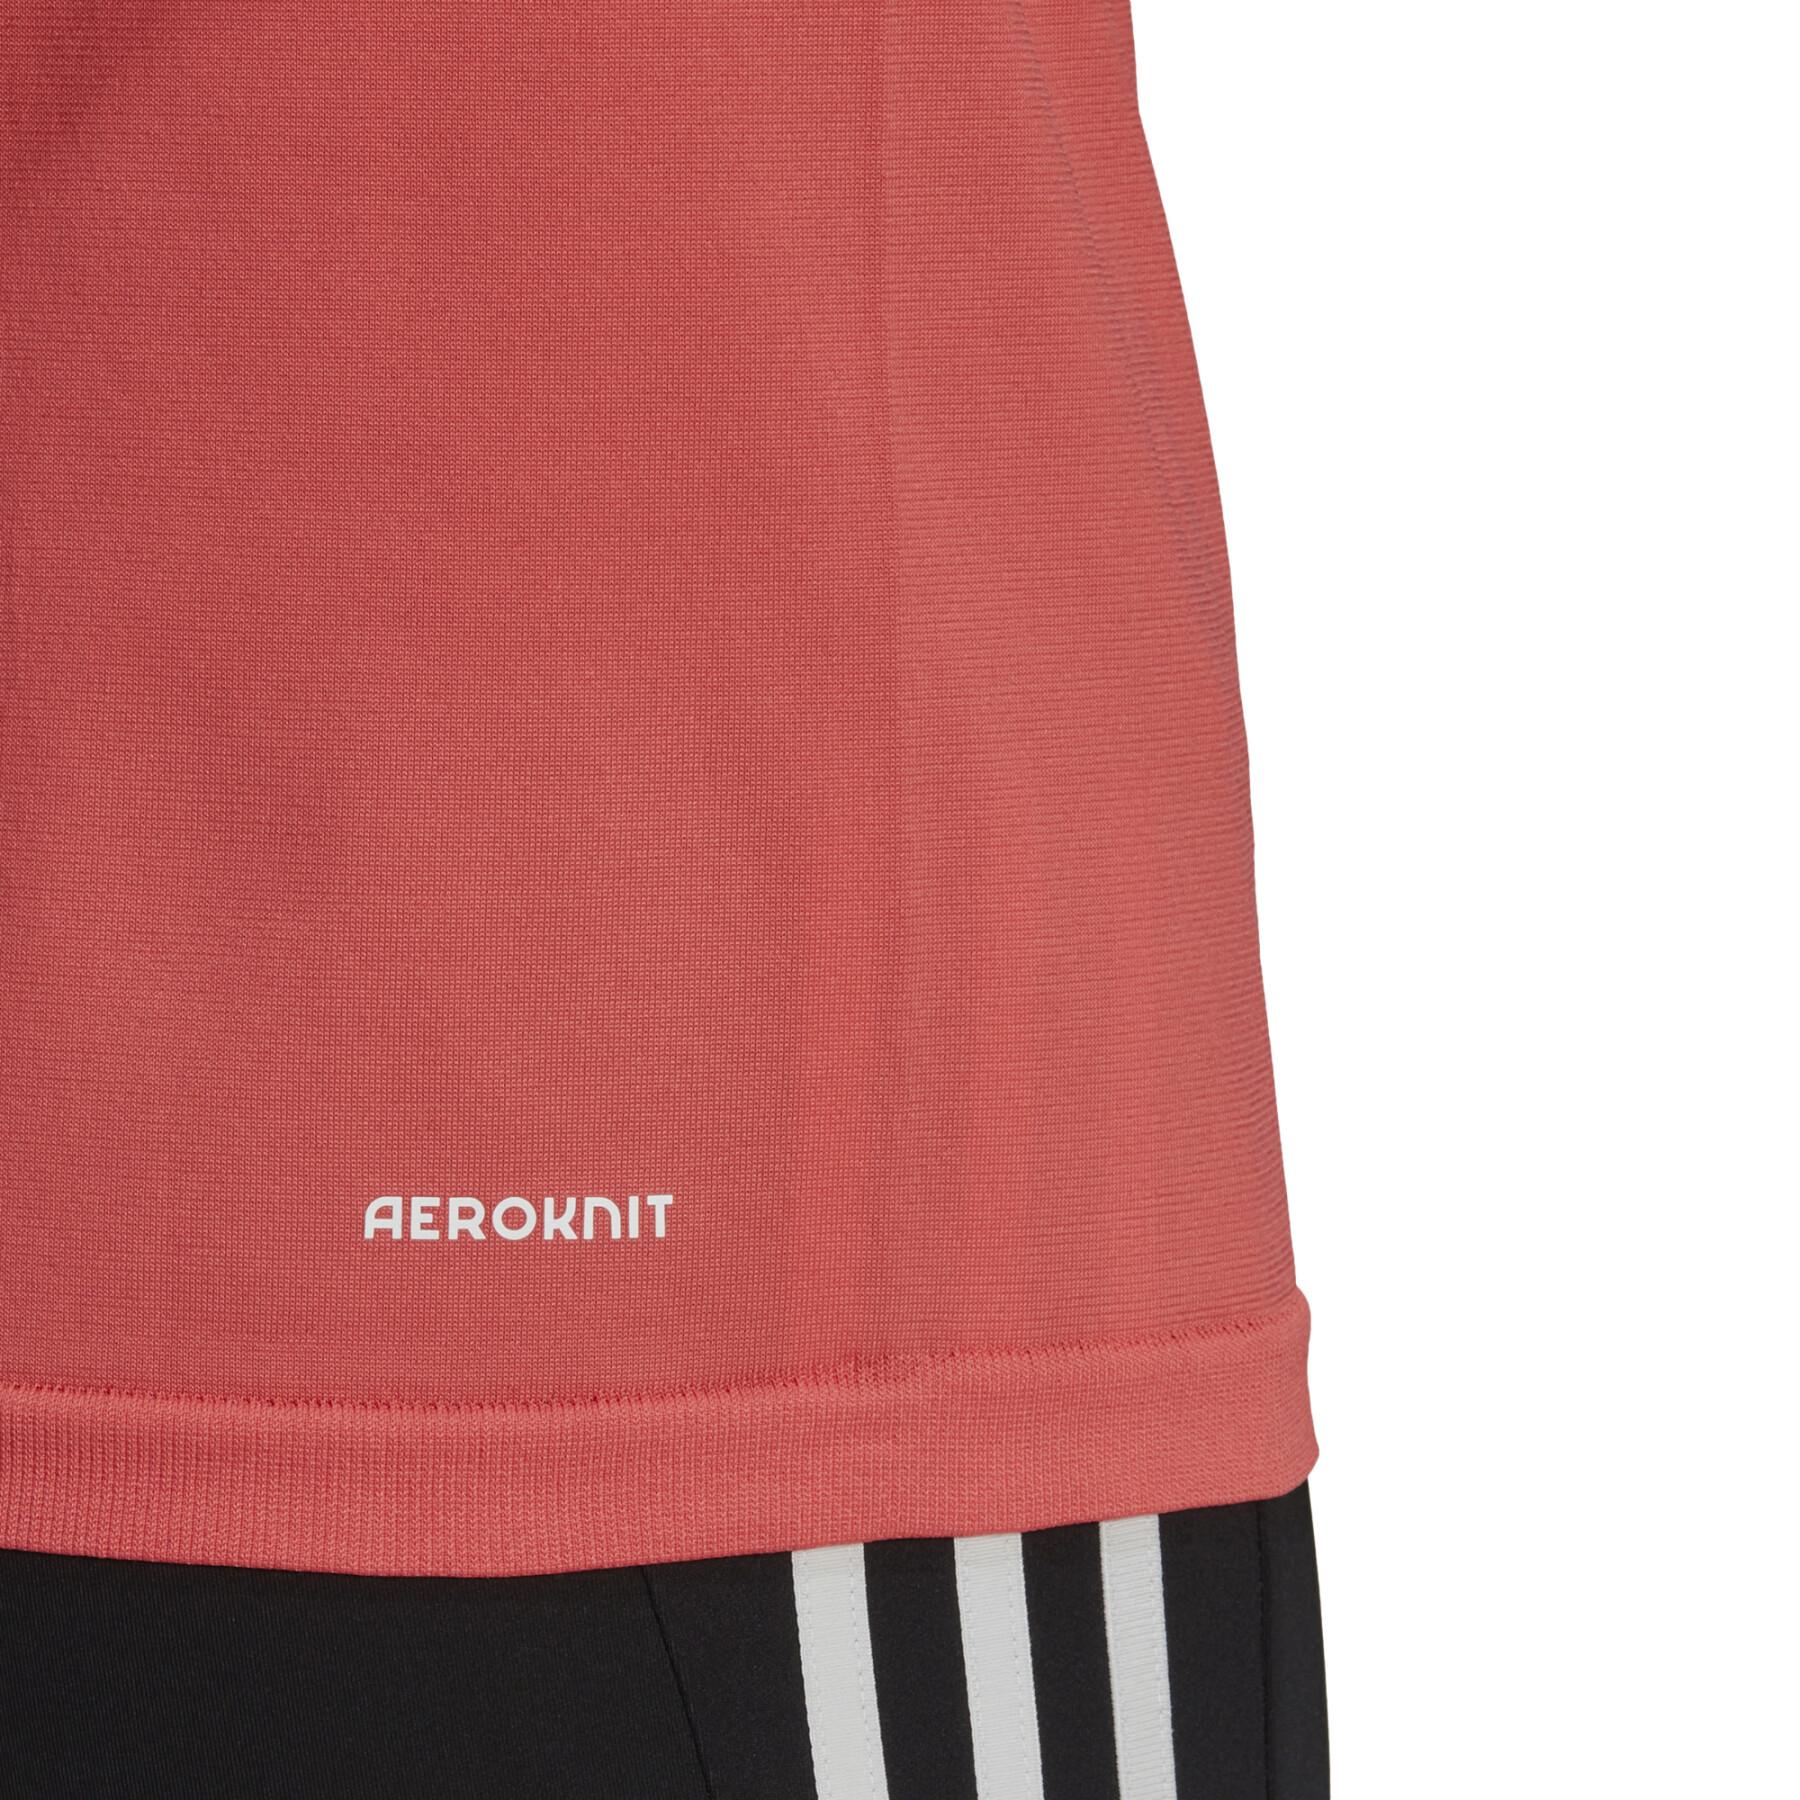 Women's T-shirt adidas Seamless Sport